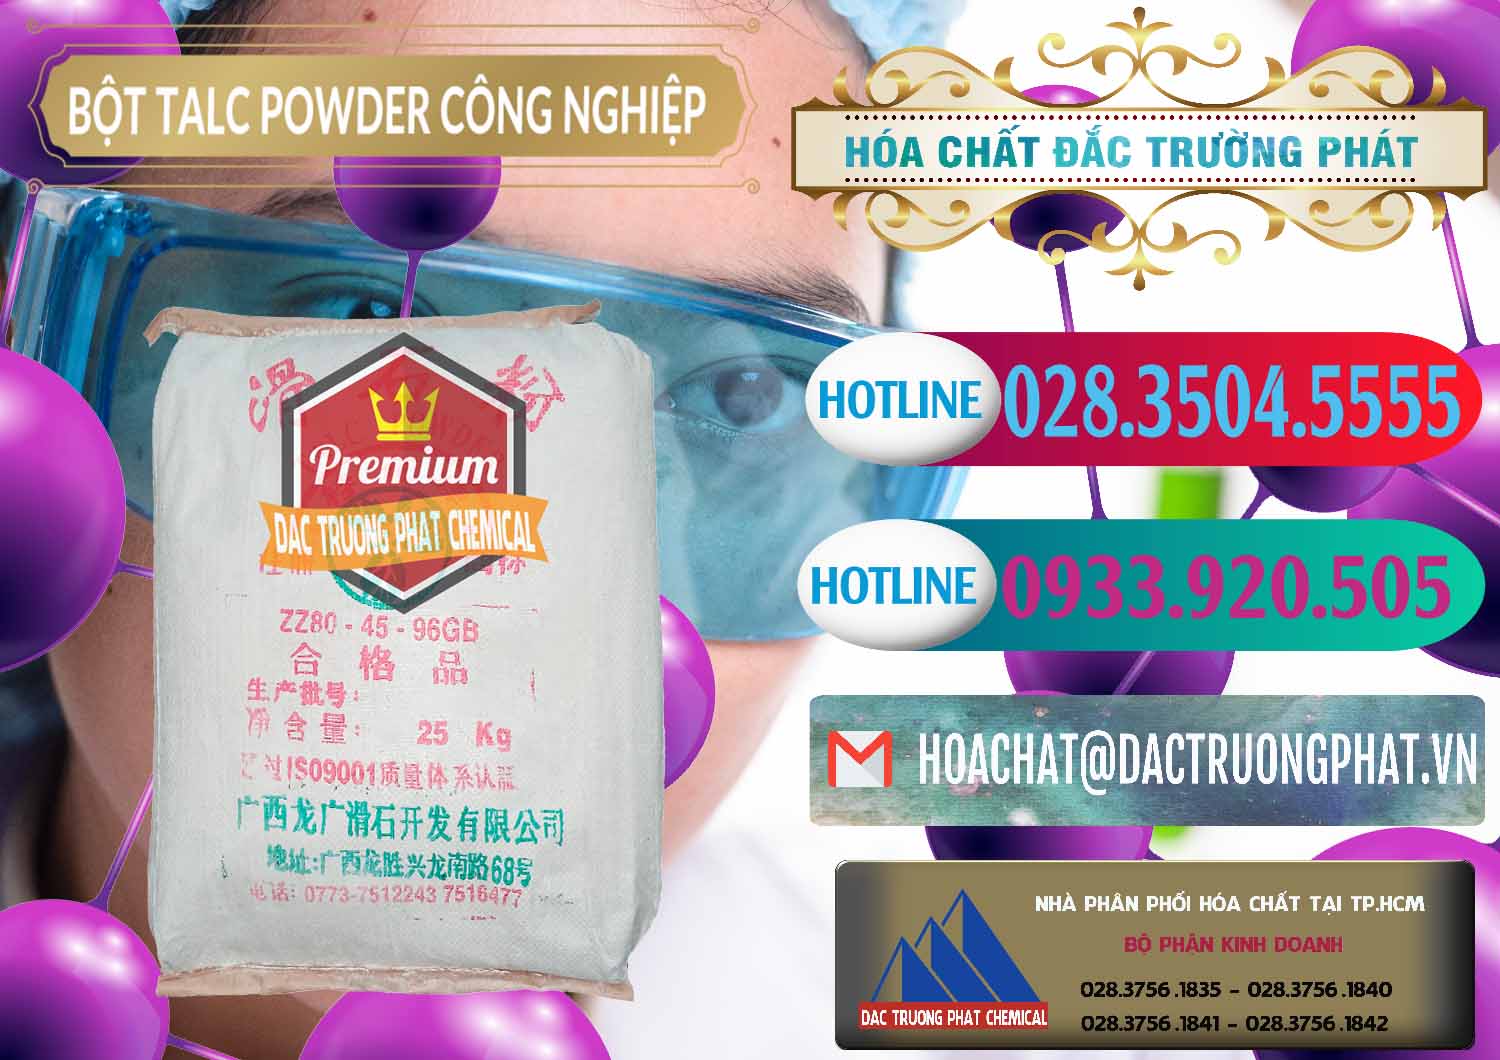 Nơi chuyên kinh doanh & bán Bột Talc Powder Công Nghiệp Trung Quốc China - 0037 - Nơi phân phối và cung cấp hóa chất tại TP.HCM - truongphat.vn